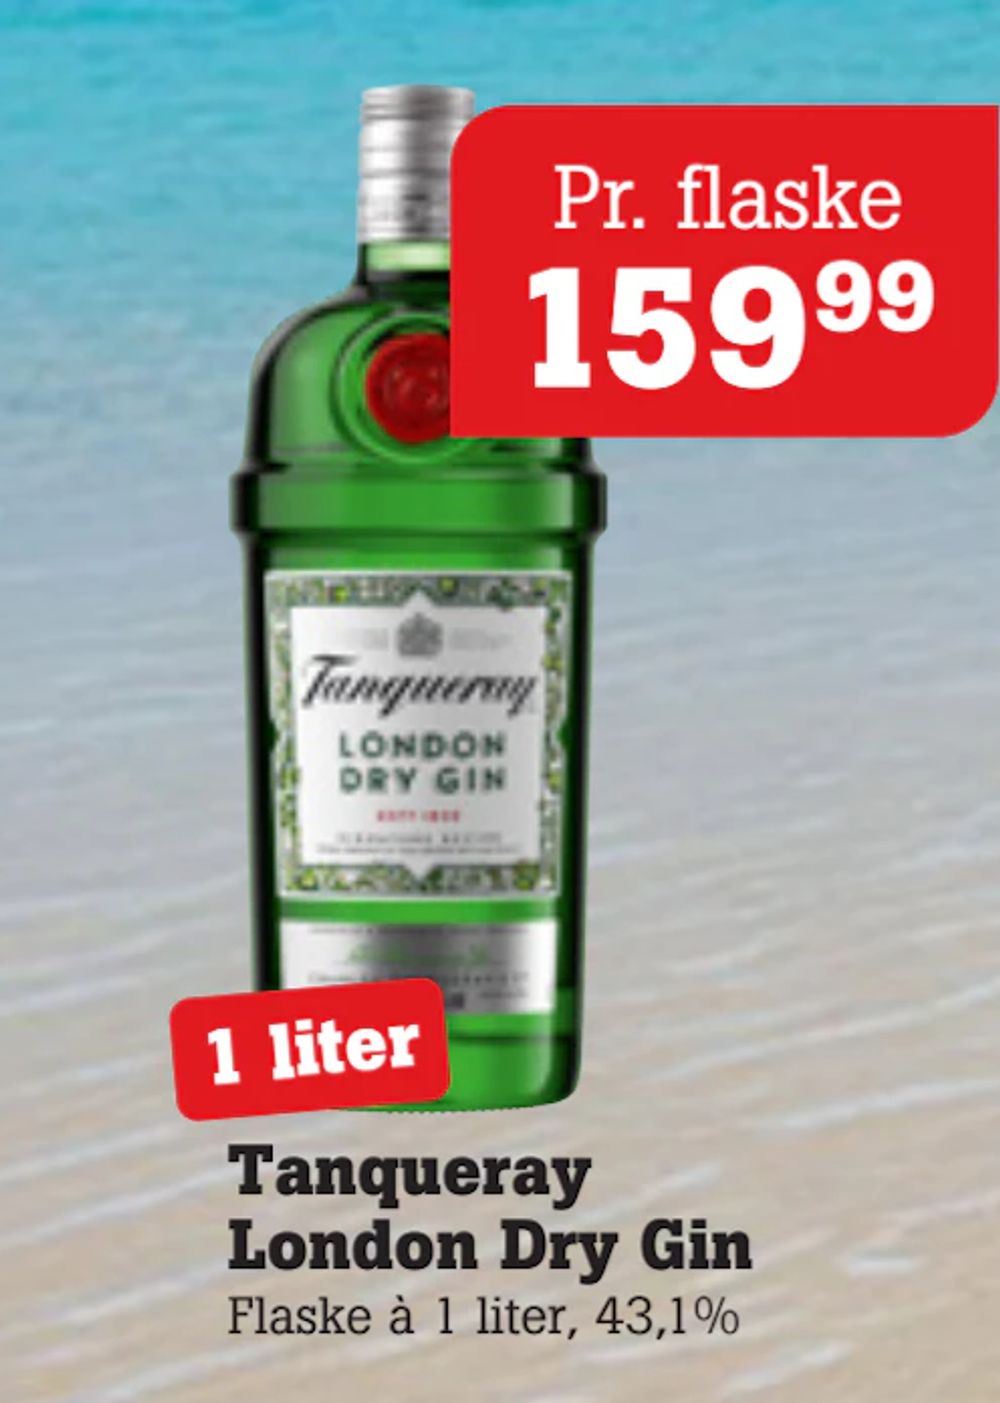 Tilbud på Tanqueray London Dry Gin fra Poetzsch Padborg til 159,99 kr.